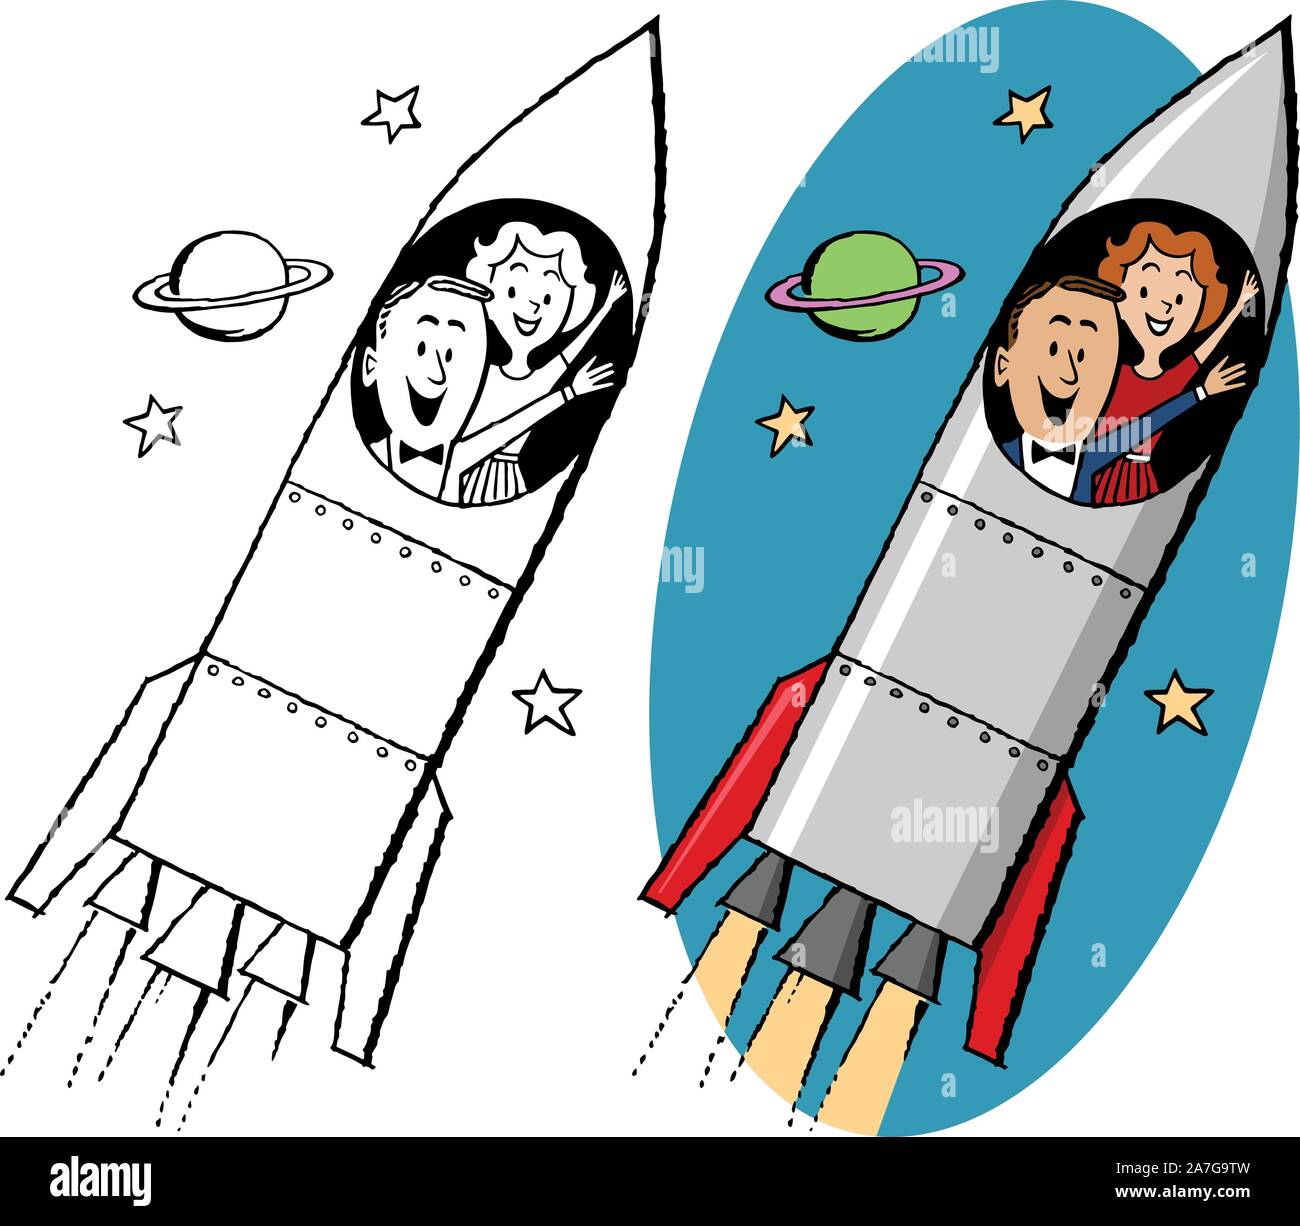 A cartoon of a couple riding in a rocket ship into outer space. Stock Vector